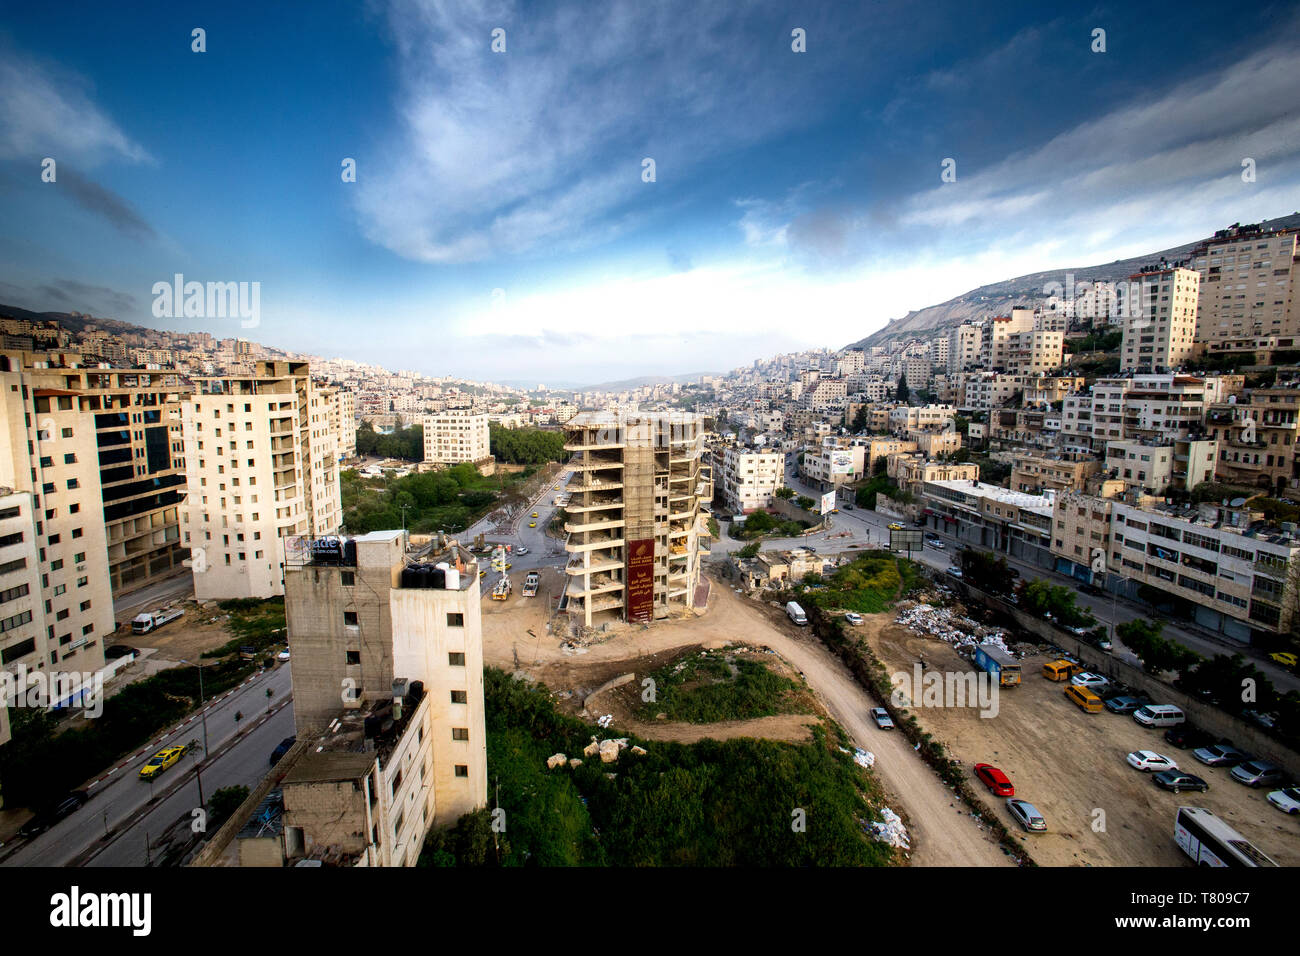 Le centre-ville de Naplouse, en Cisjordanie, Palestine, Moyen Orient Banque D'Images